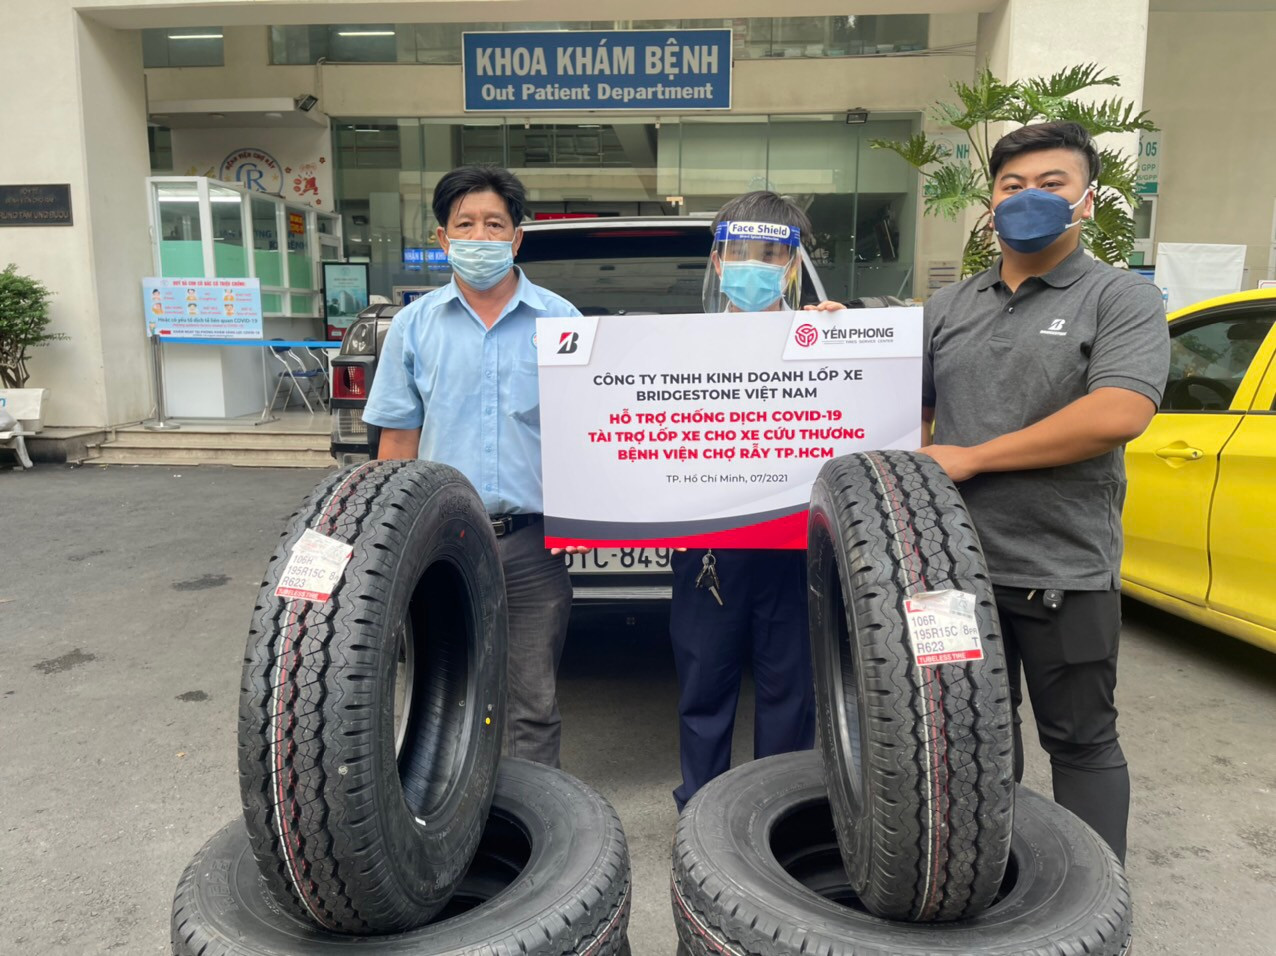 Bridgestone Việt Nam hợp tác cùng Đại lý trao tặng lốp cho xe cứu thương của Bệnh viện Chợ Rẫy và Trung tâm Cấp cứu 115 trong đợt dịch COVID-19 lần thứ 4 vừa qua